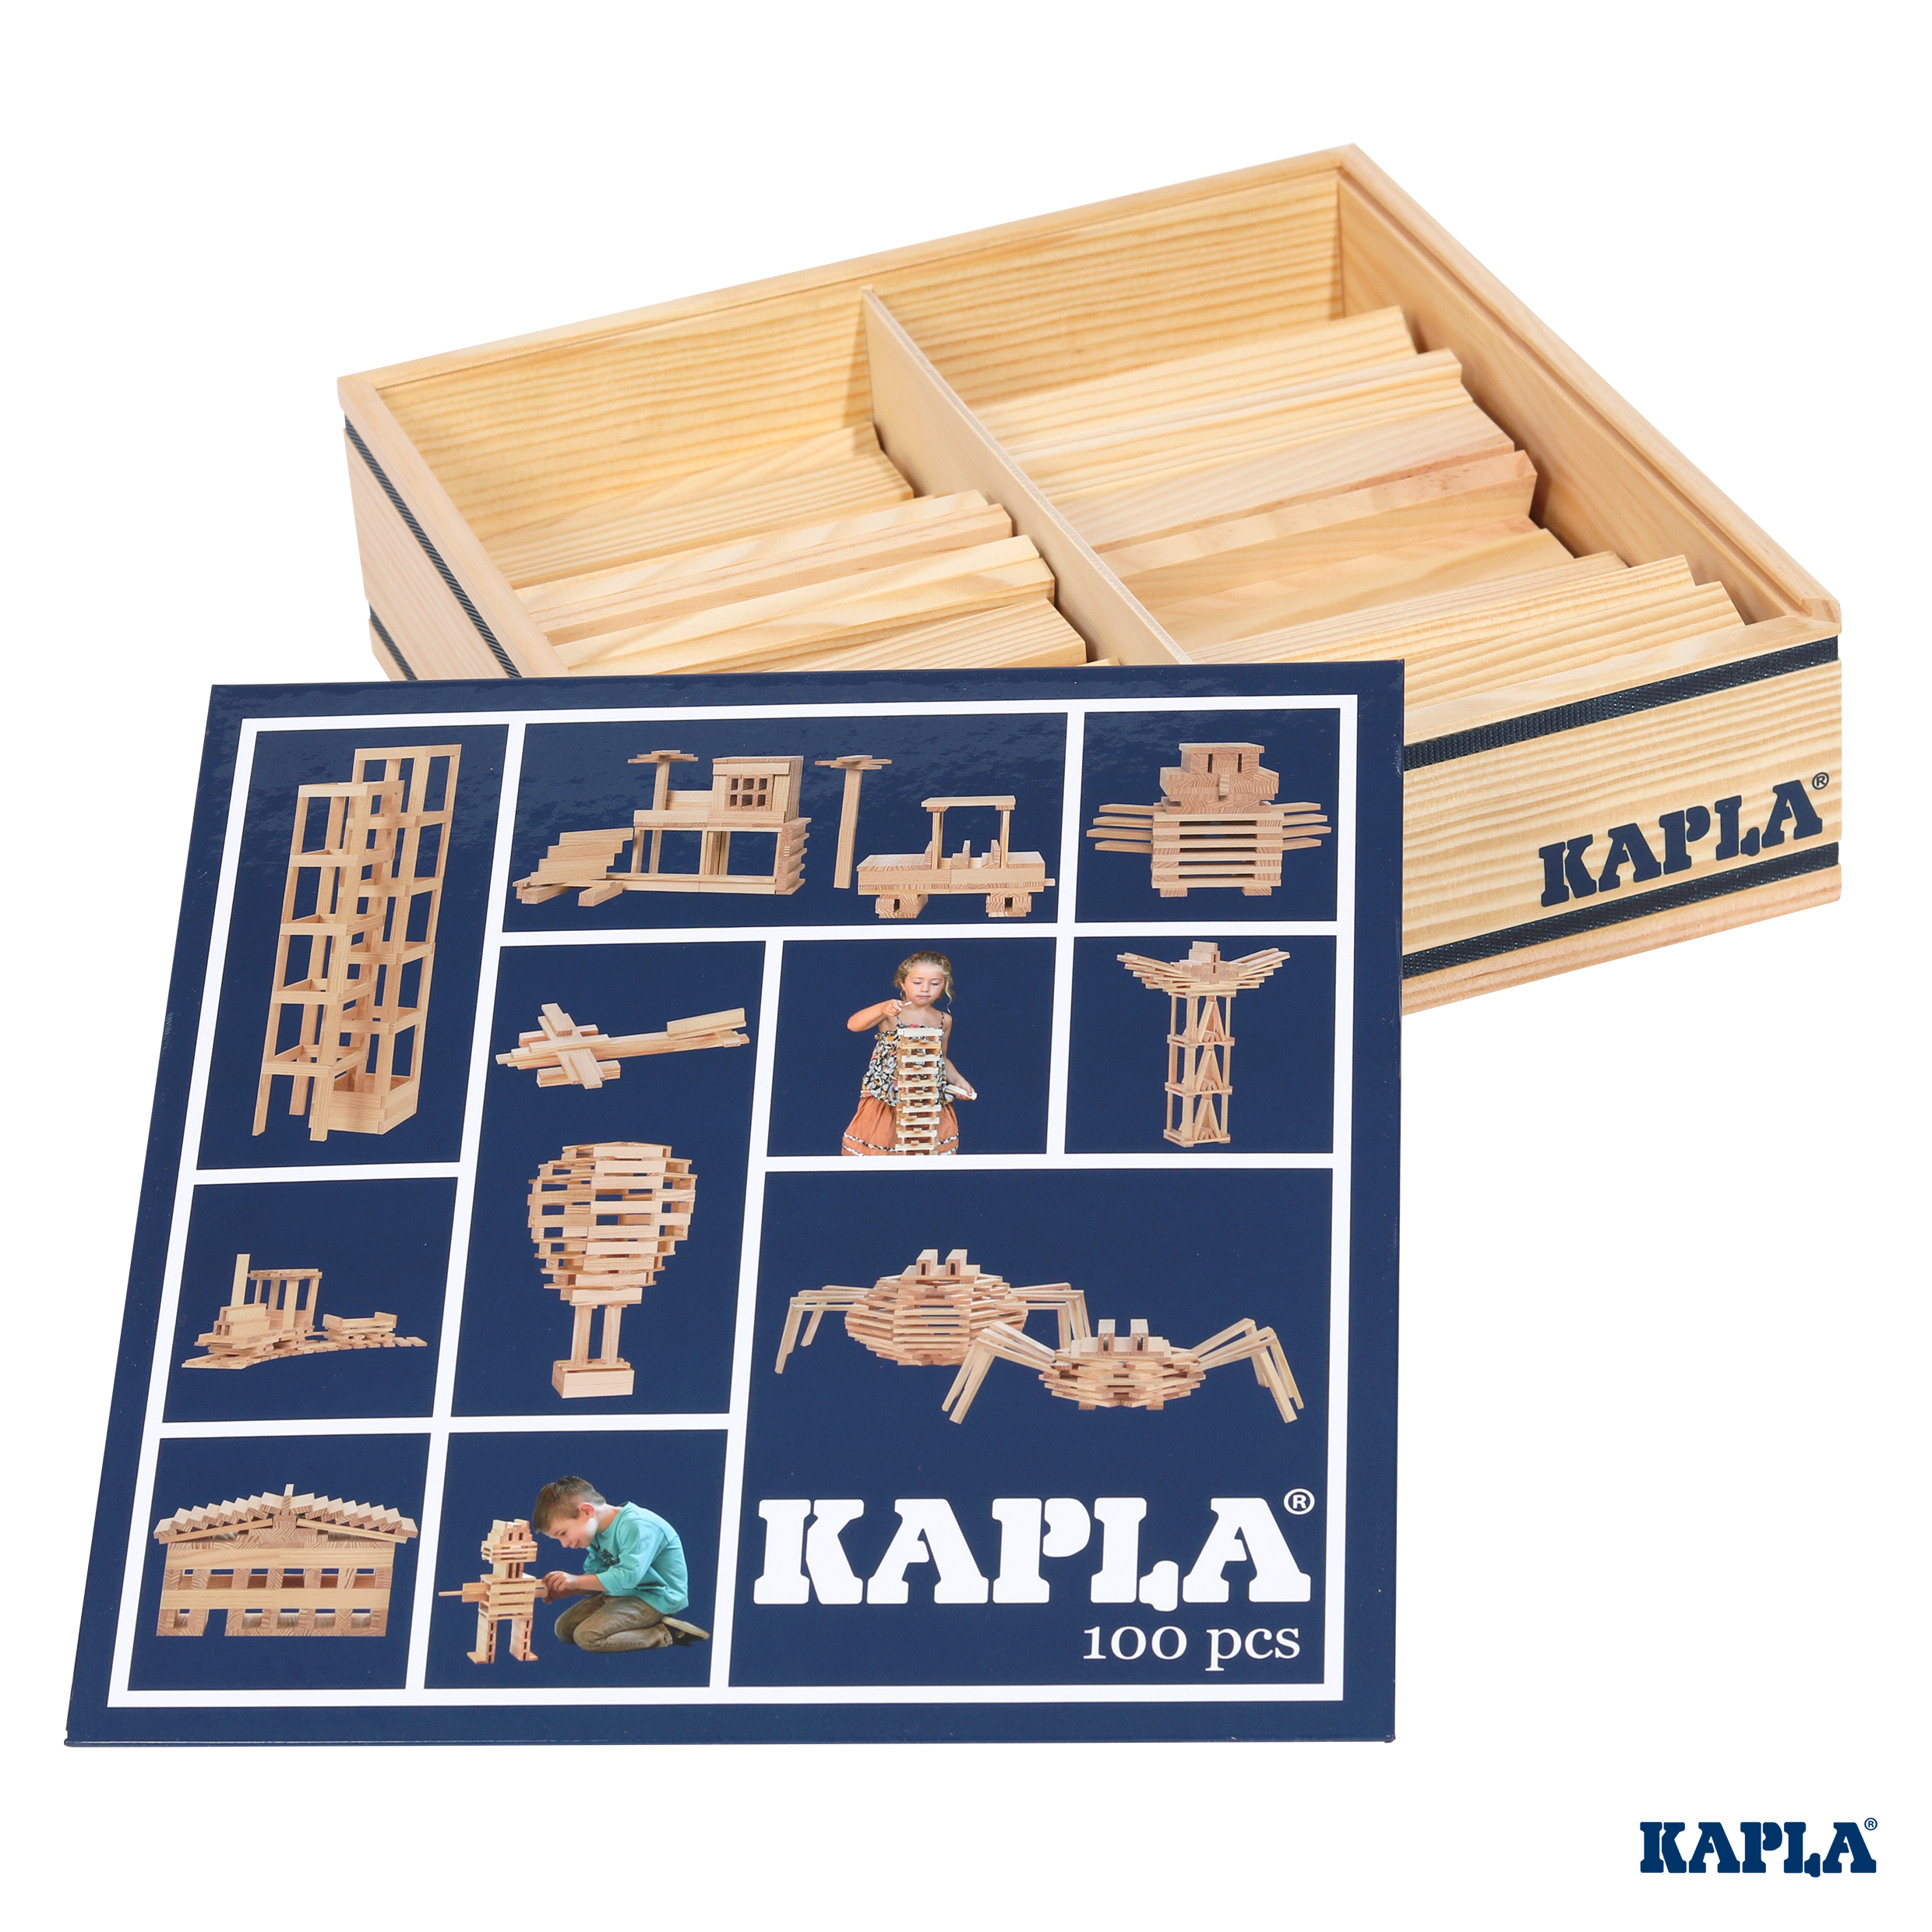 Kapla 100 Case - Wooden Construction Set